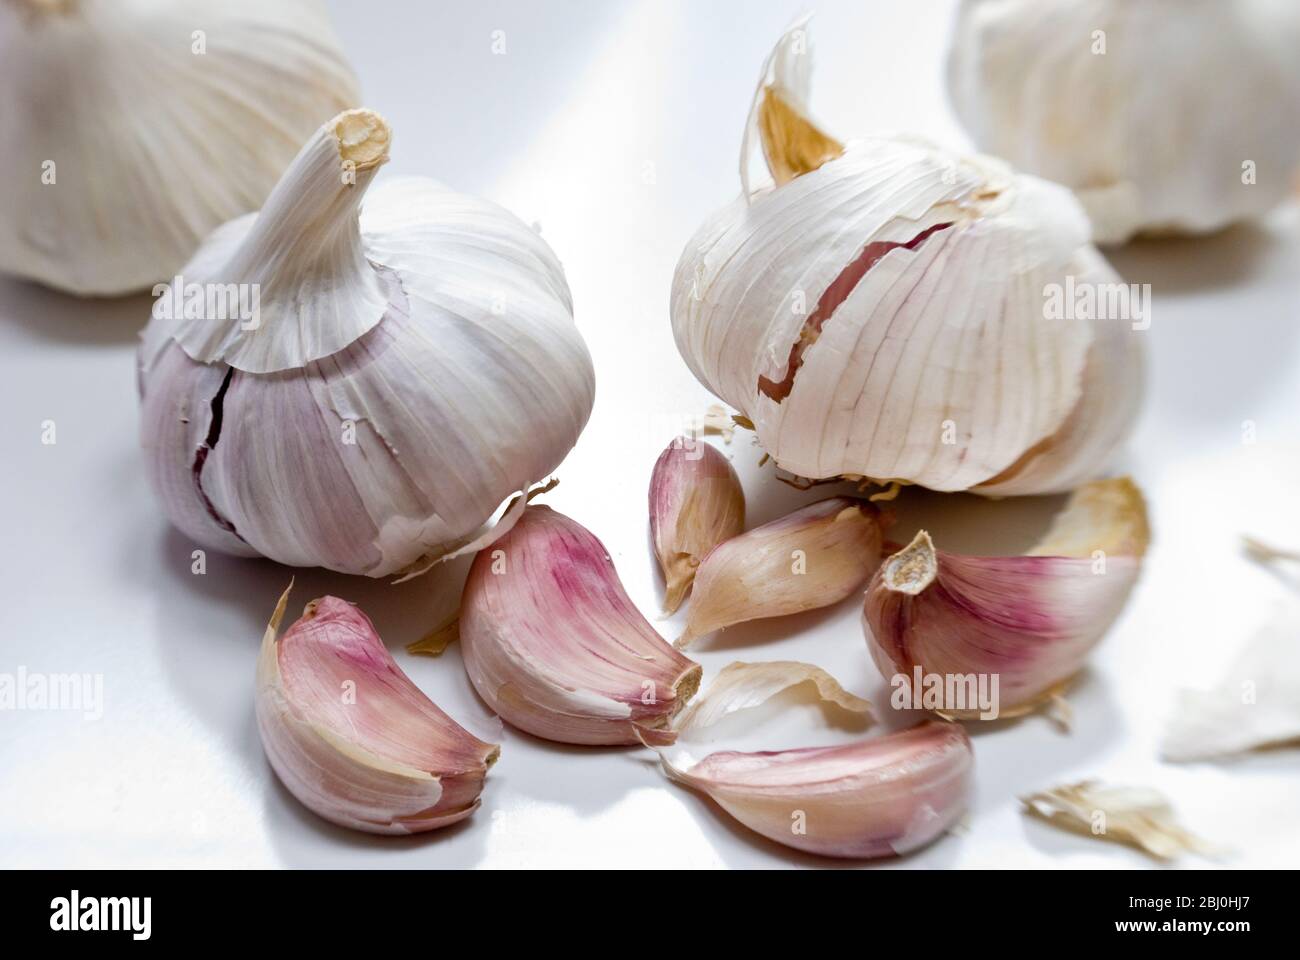 Bulbi e spicchi d'aglio su superficie bianca - Foto Stock